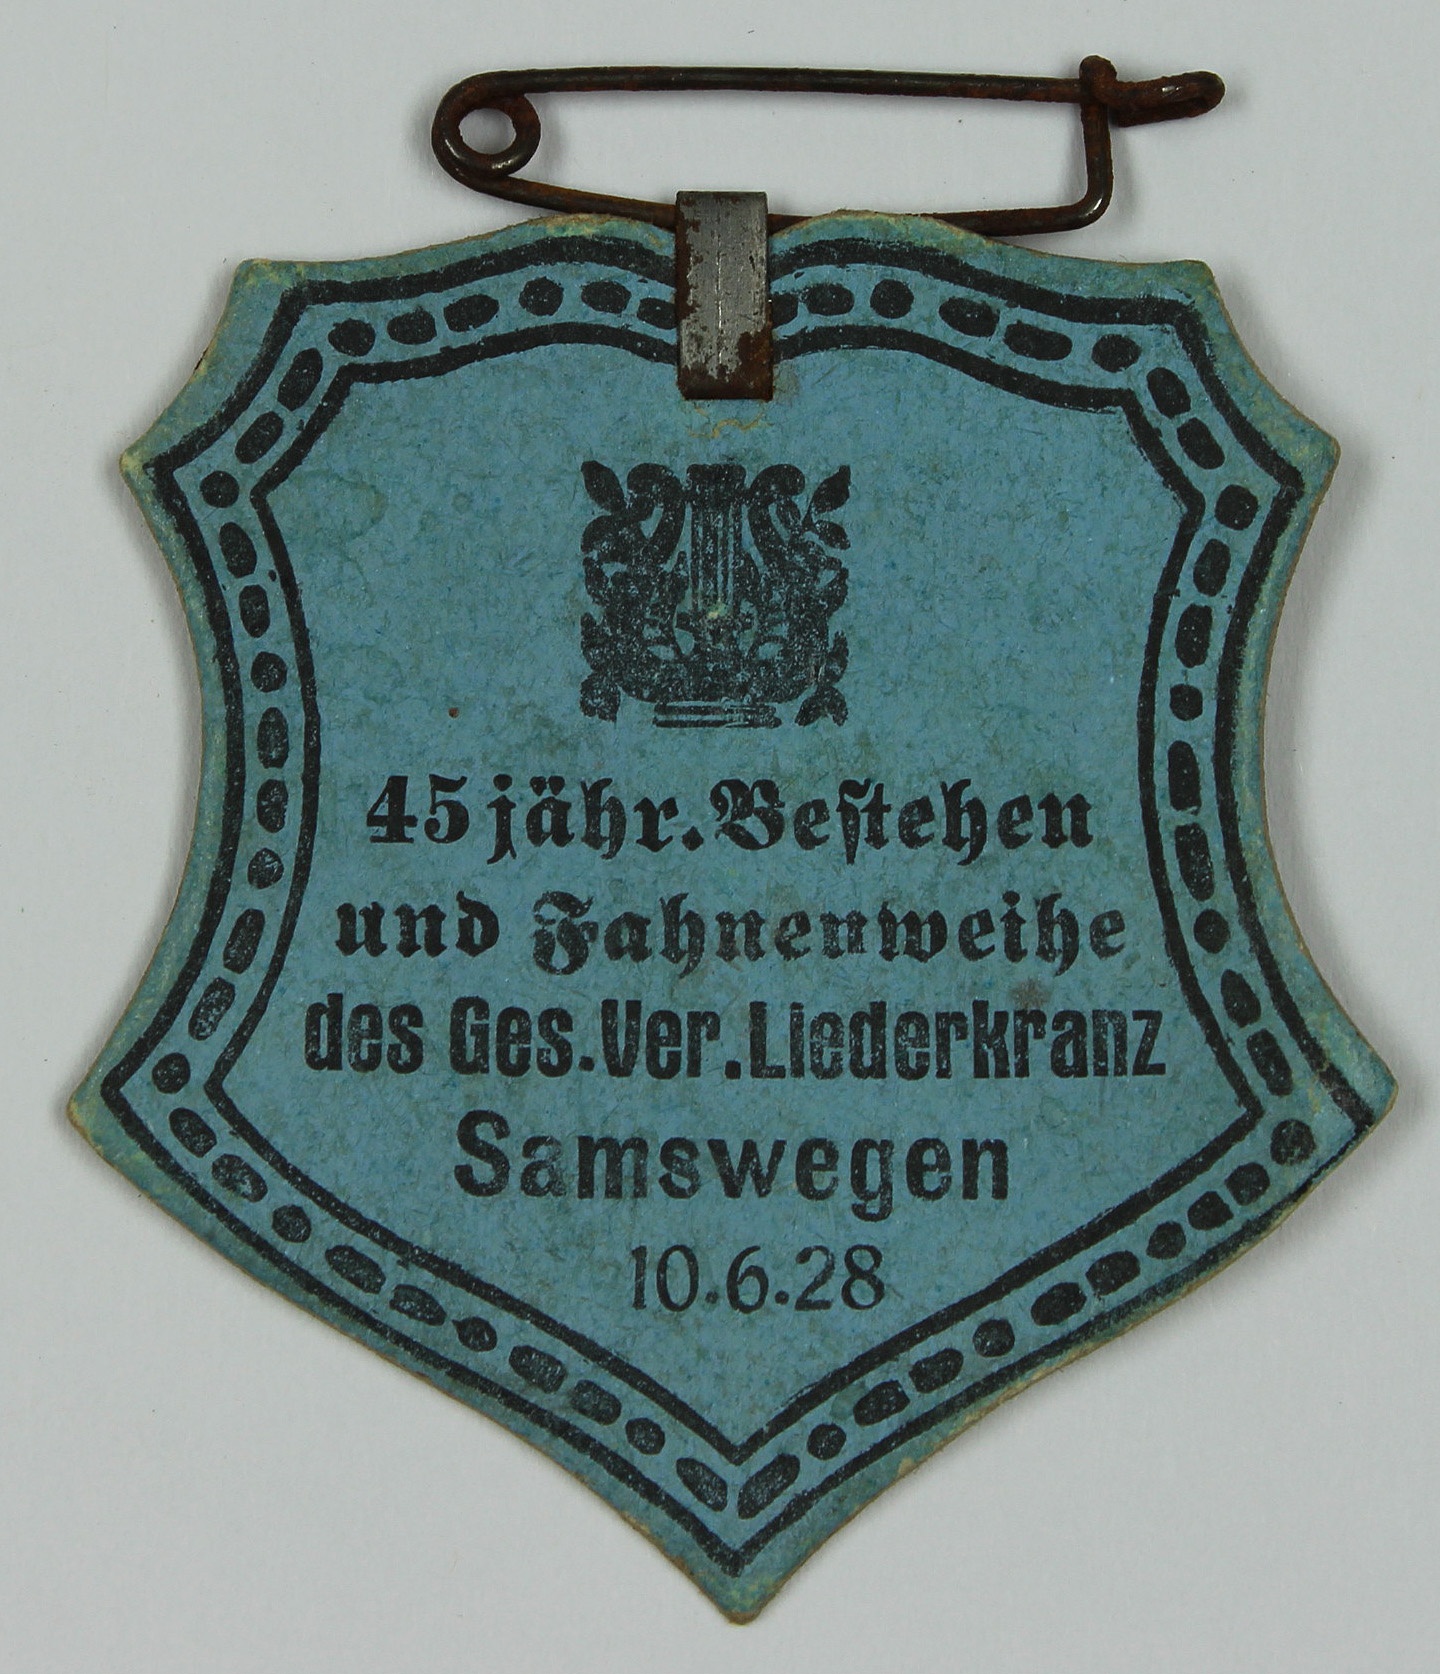 Plakette des Gesang-Vereins Liederkranz Samswegen 1928 (Museum Wolmirstedt RR-F)